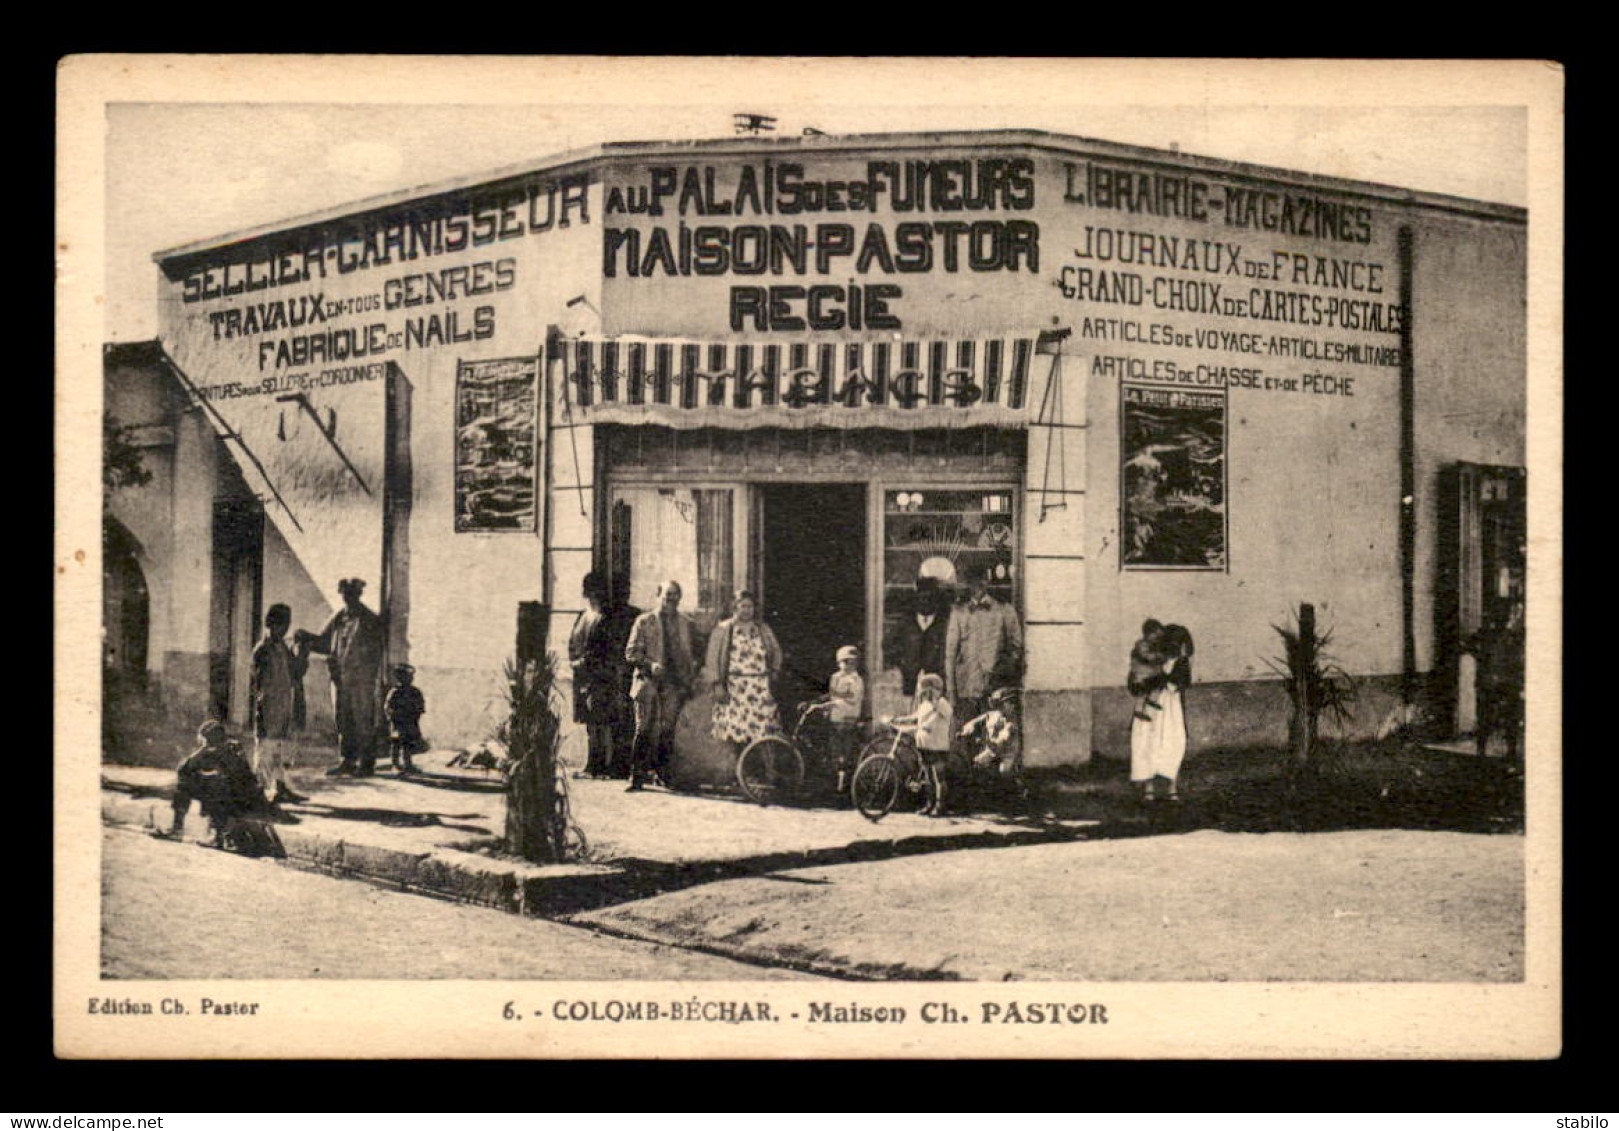 ALGERIE - SAHARA - COLOMB-BECHAR - LA MAISON CH. PASTOR - AU PALAIS DES FUMEURS - Bechar (Colomb Béchar)